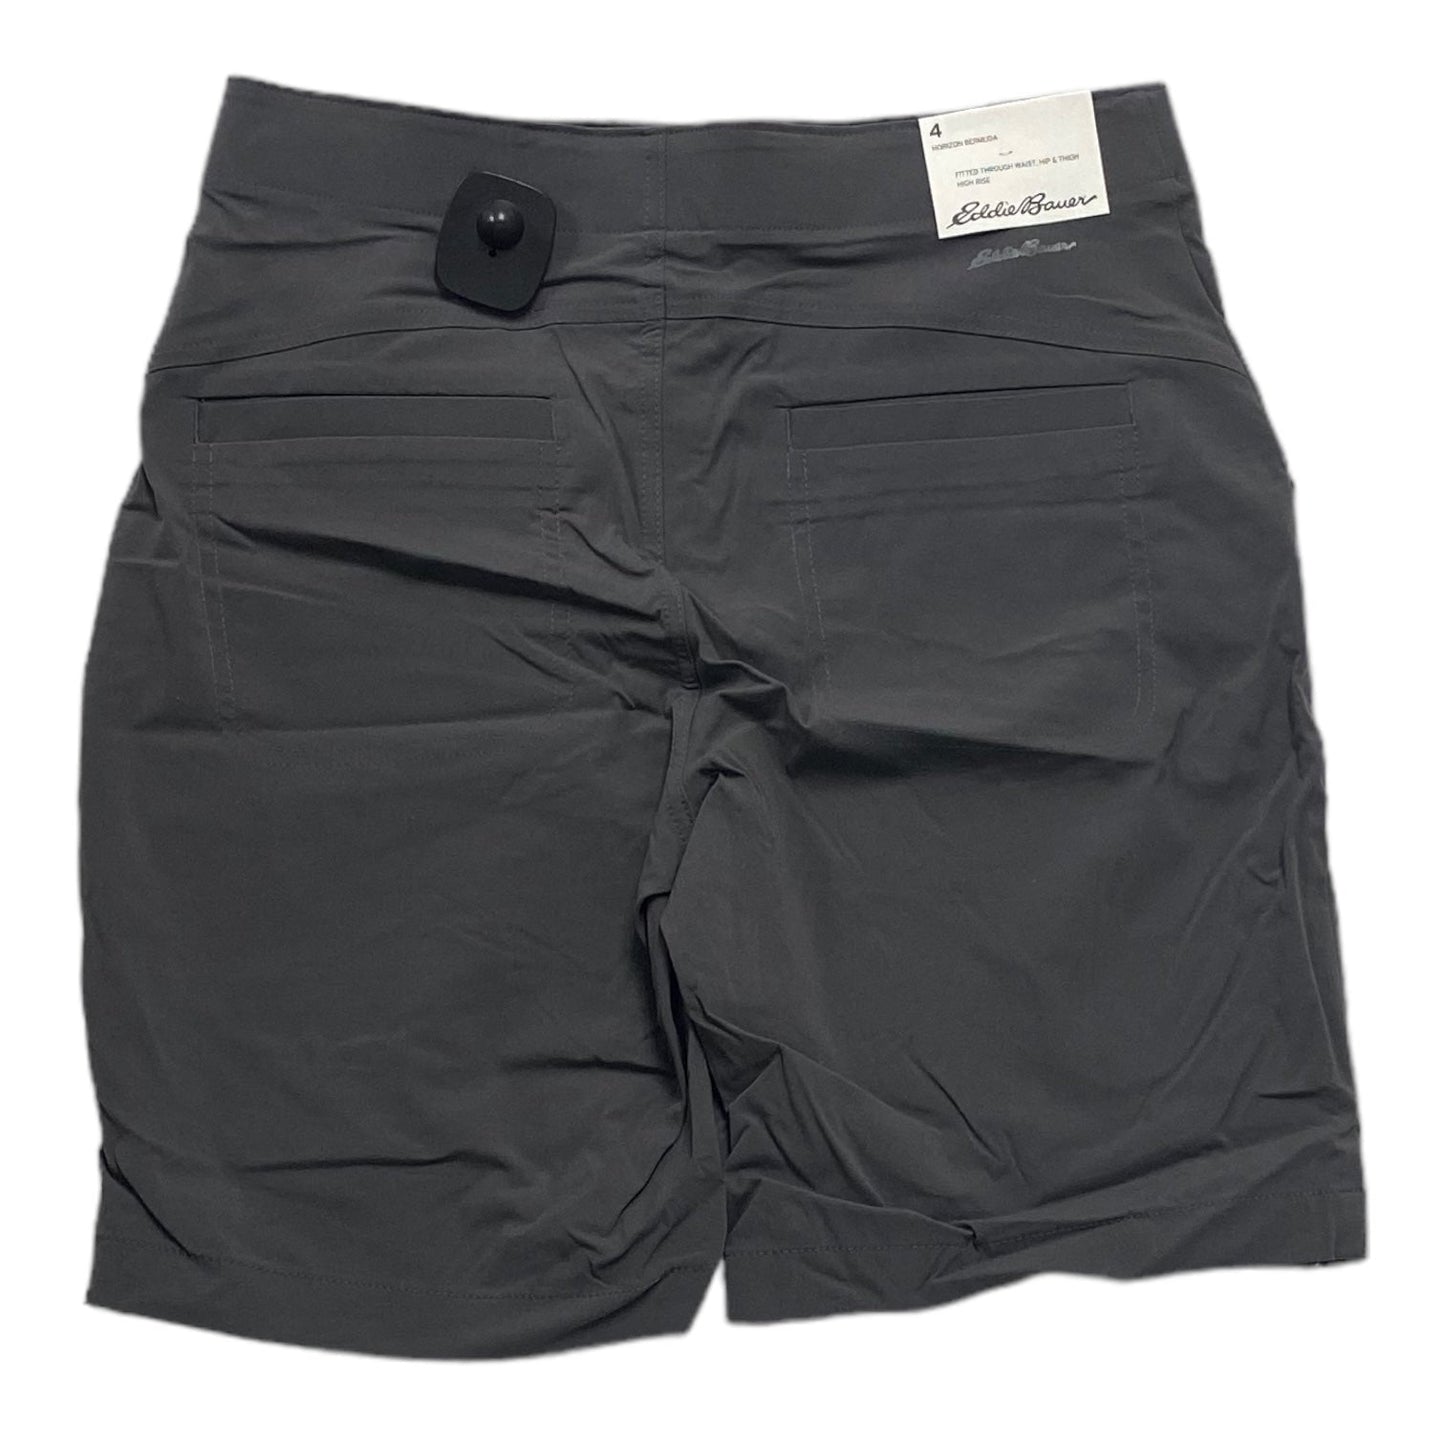 Grey Shorts Eddie Bauer, Size S